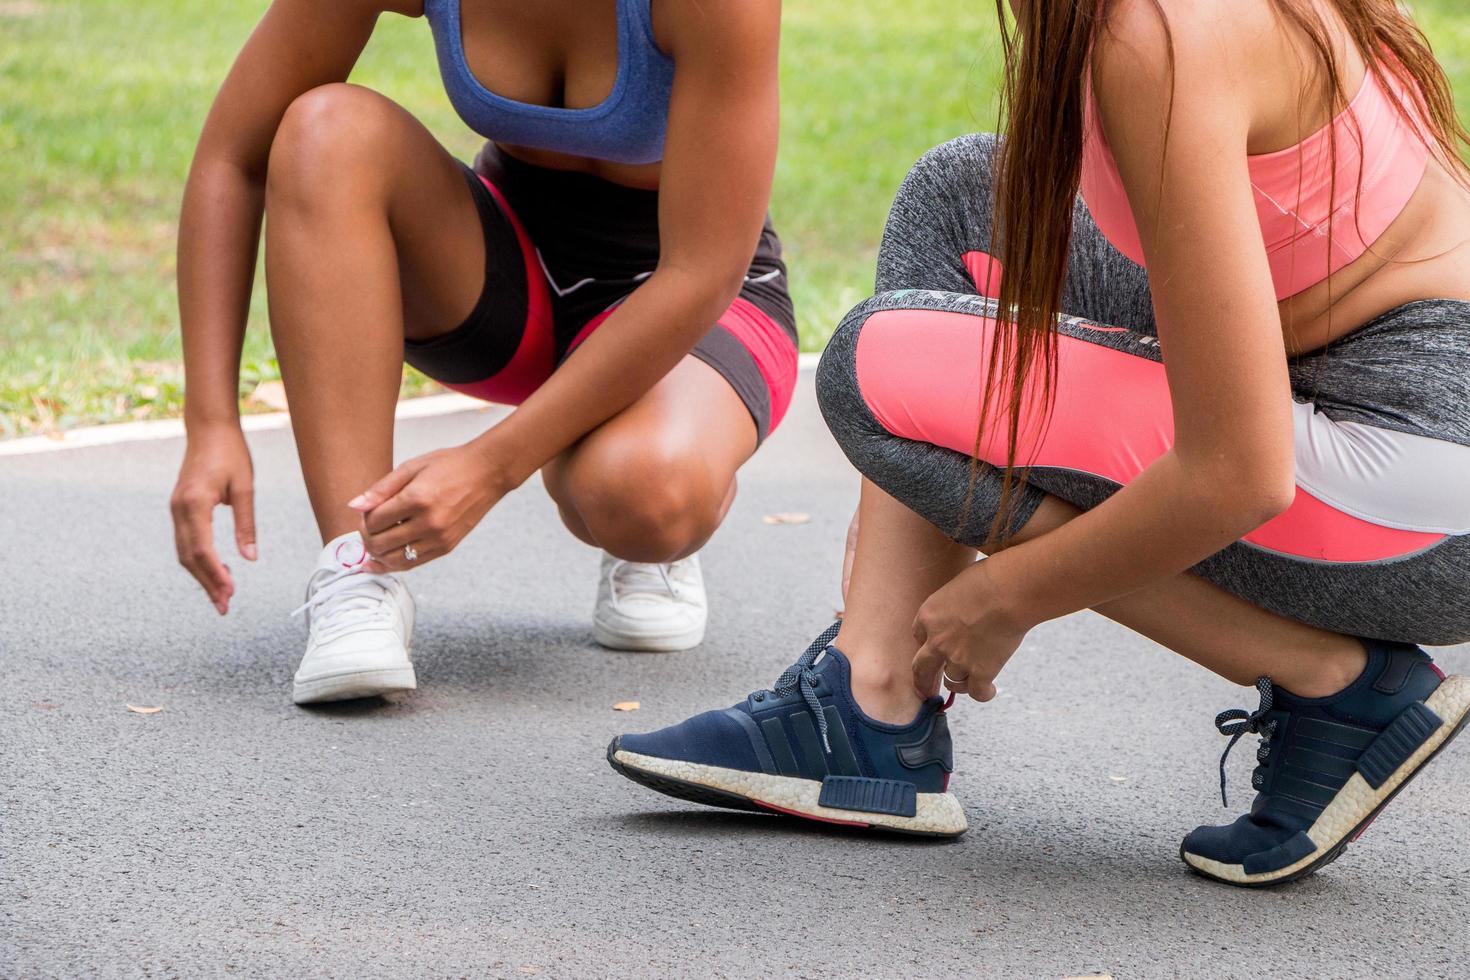 mulheres de fitness prontas para começar a correr e competir umas com as outras foto